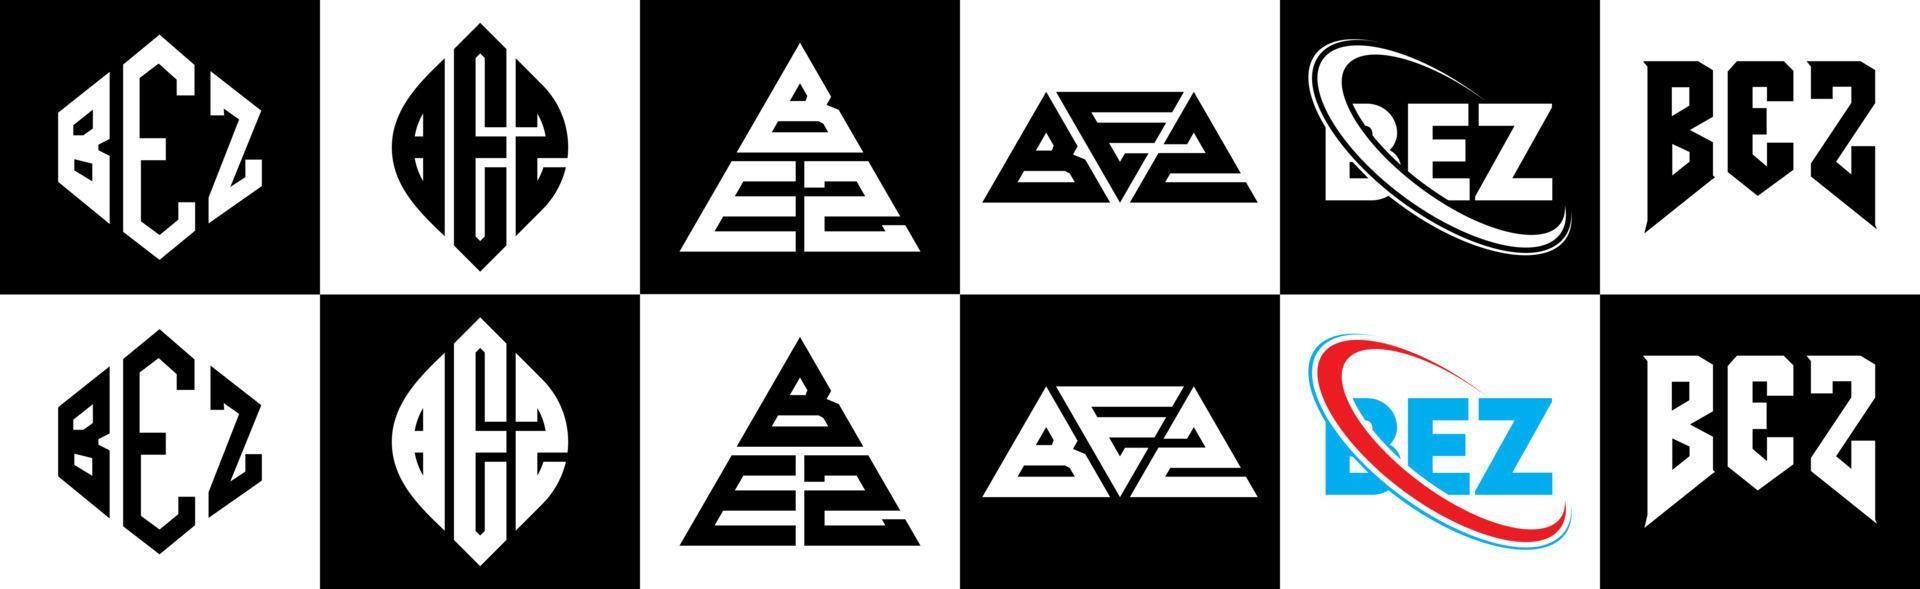 bez-Buchstaben-Logo-Design in sechs Stilen. Bez Polygon, Kreis, Dreieck, Sechseck, flacher und einfacher Stil mit schwarz-weißem Buchstabenlogo in einer Zeichenfläche. Bez minimalistisches und klassisches Logo vektor